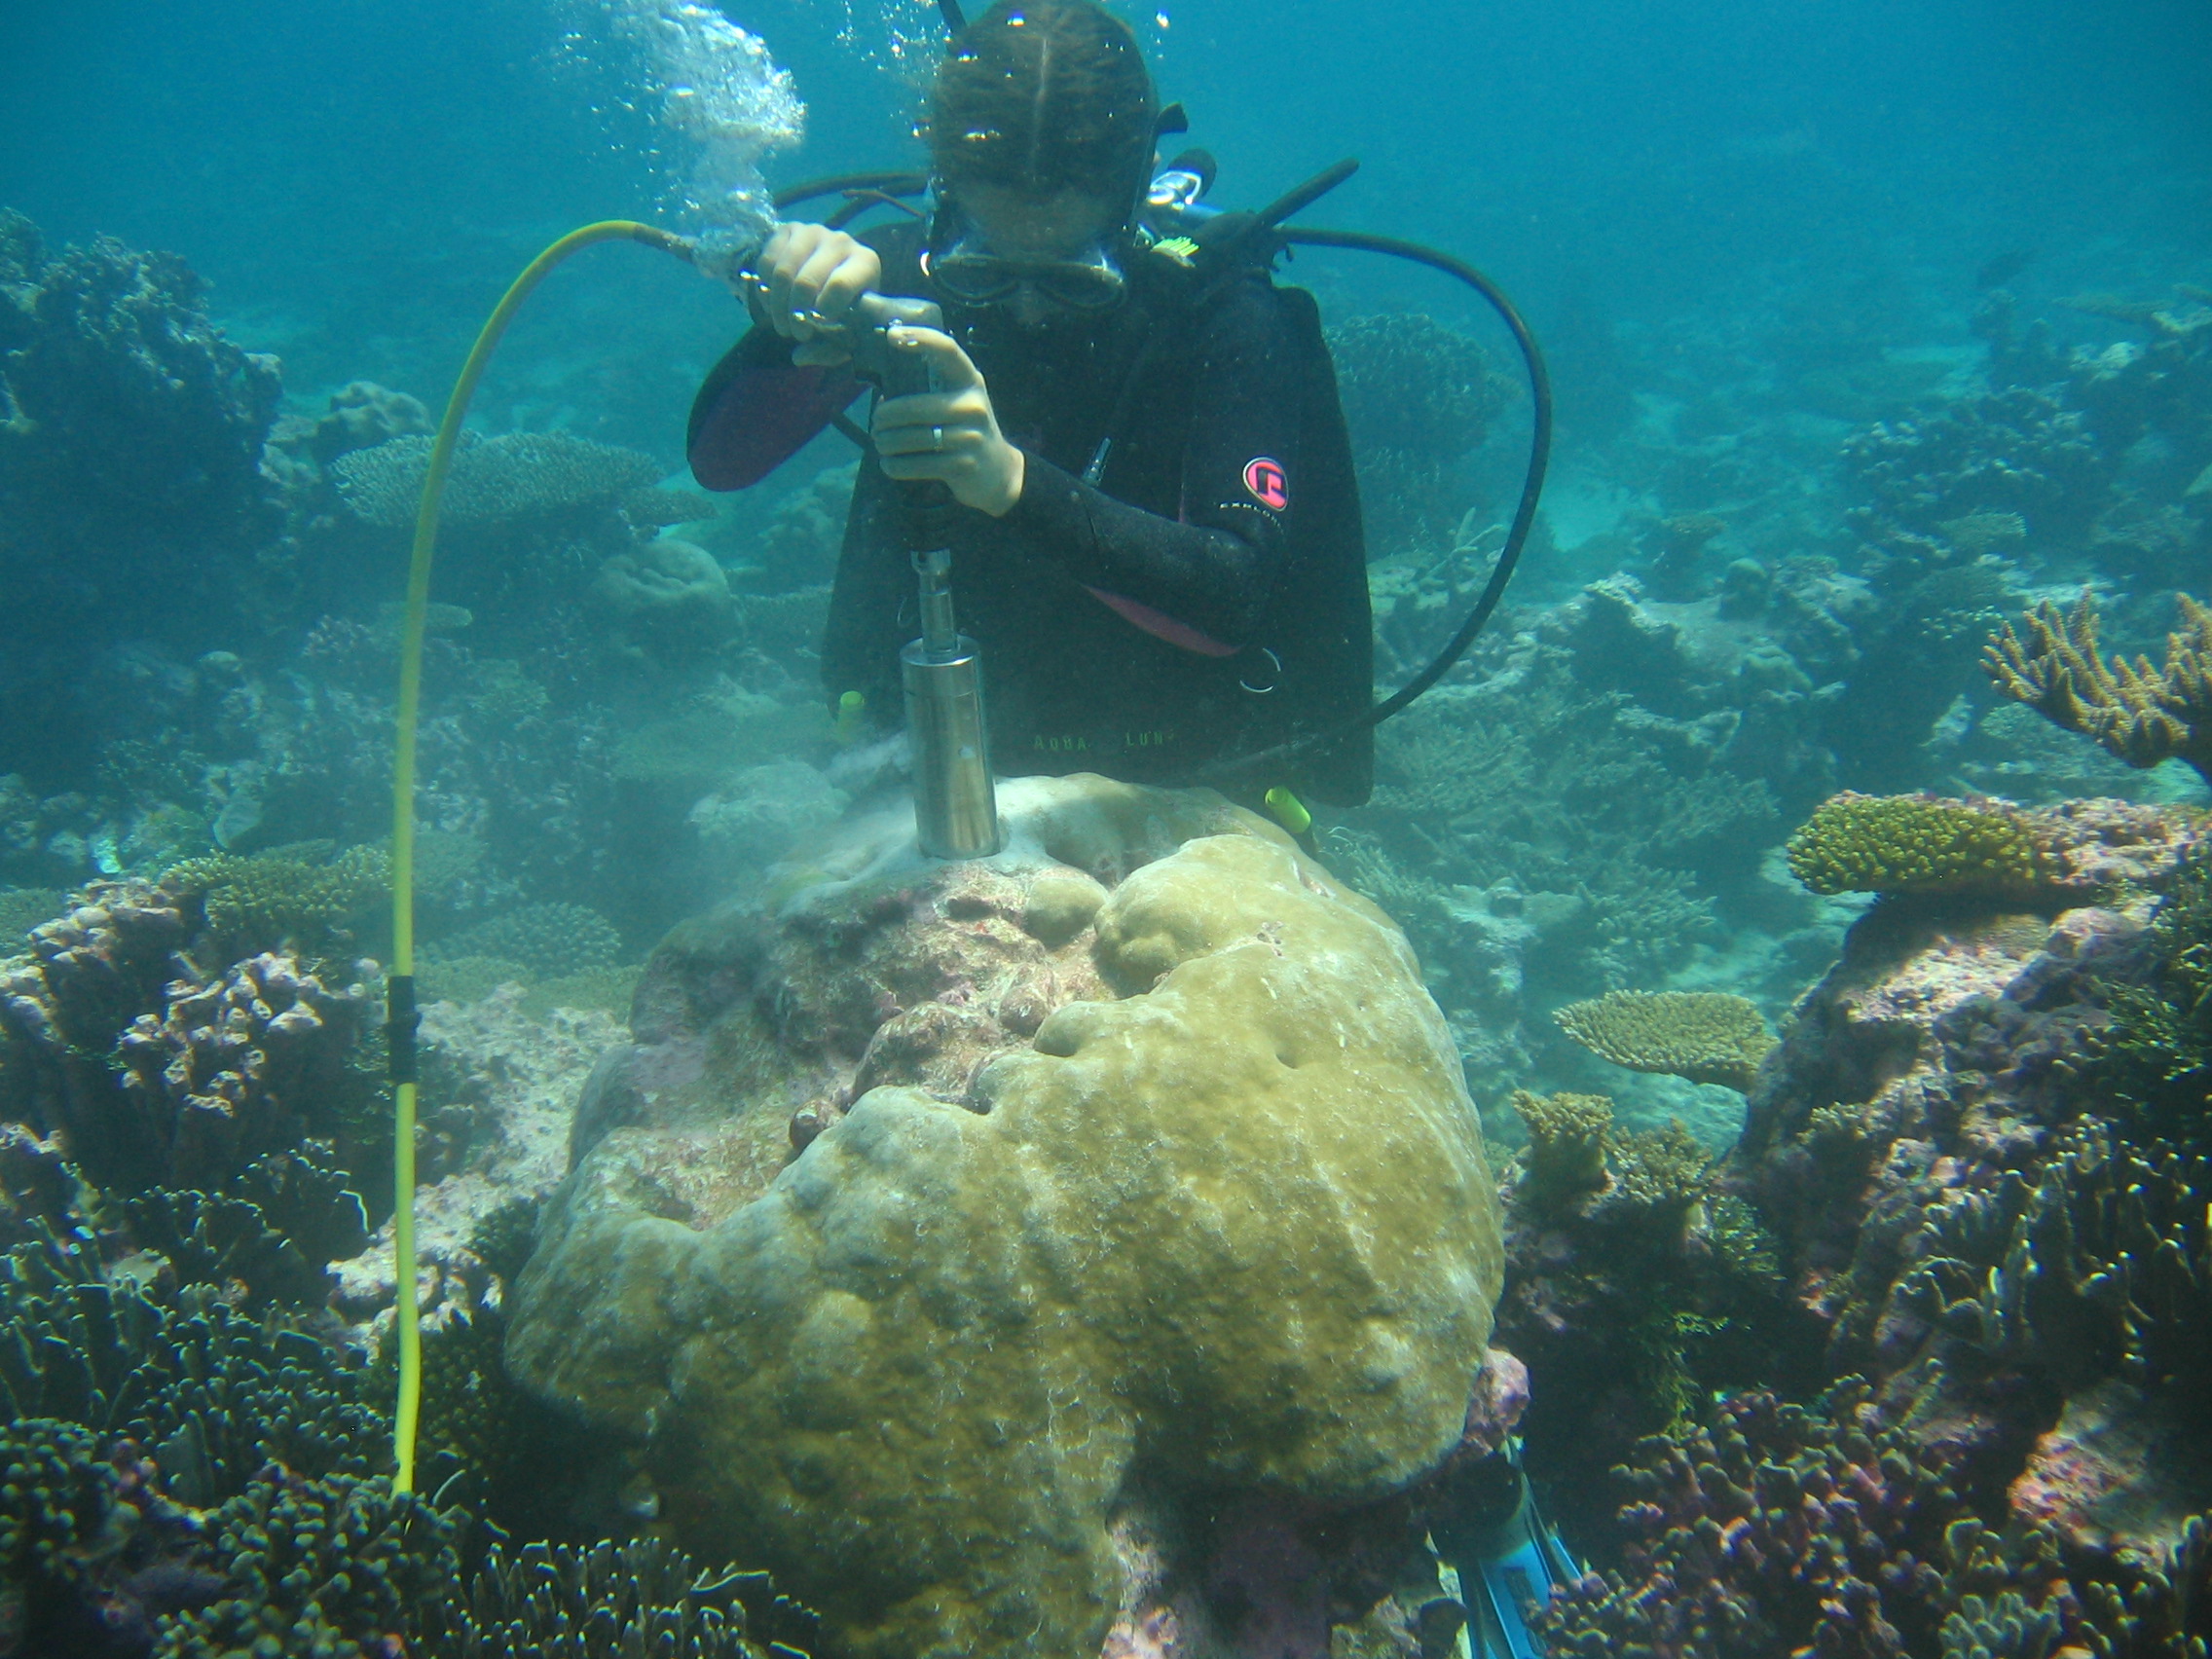 Coral coring in Kiribati